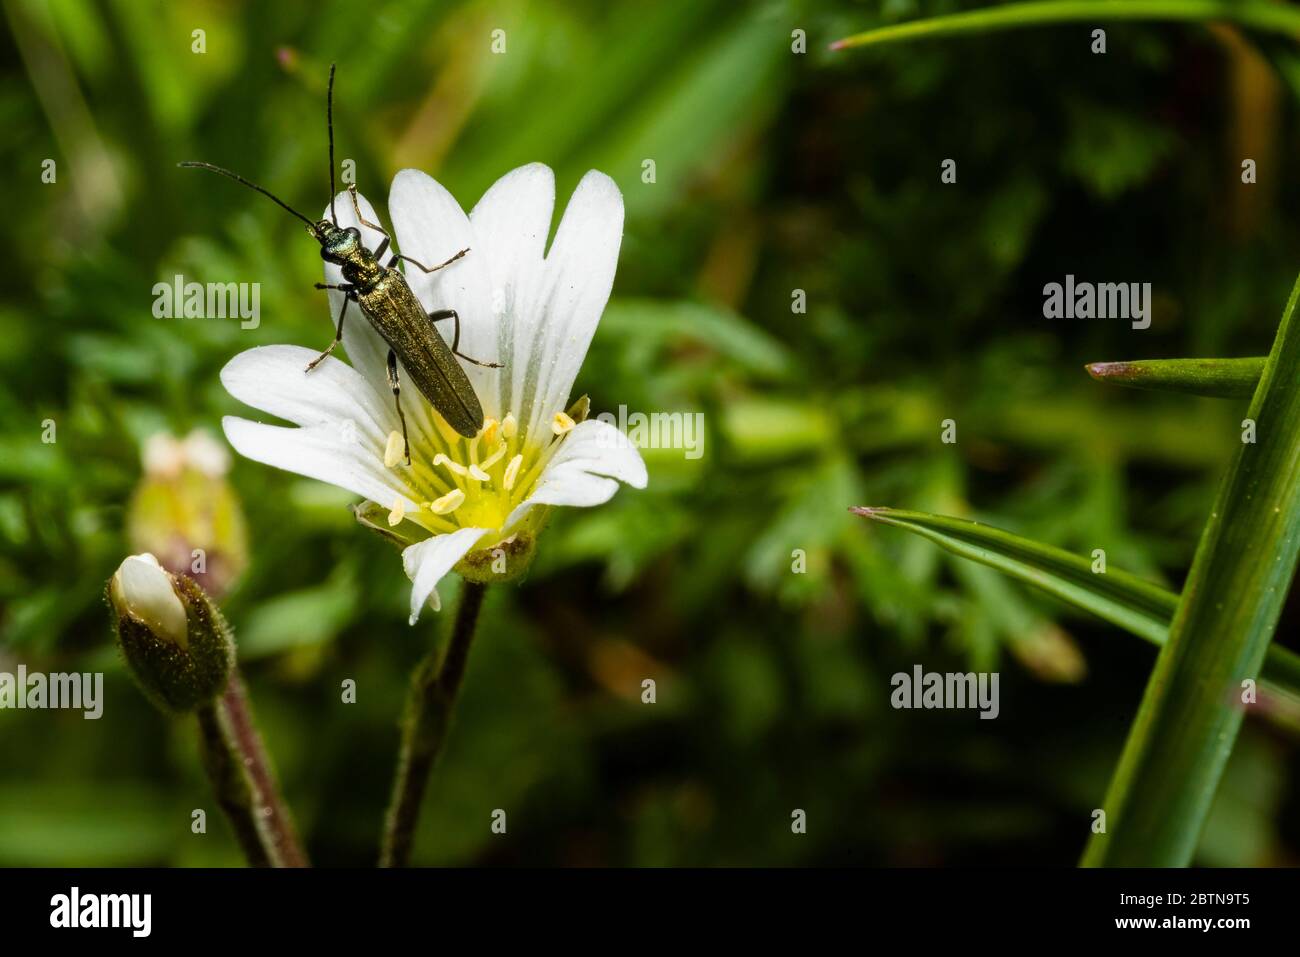 Un pequeño escarabajo de cuerno largo se sienta sobre una flor blanca, foto macro Foto de stock